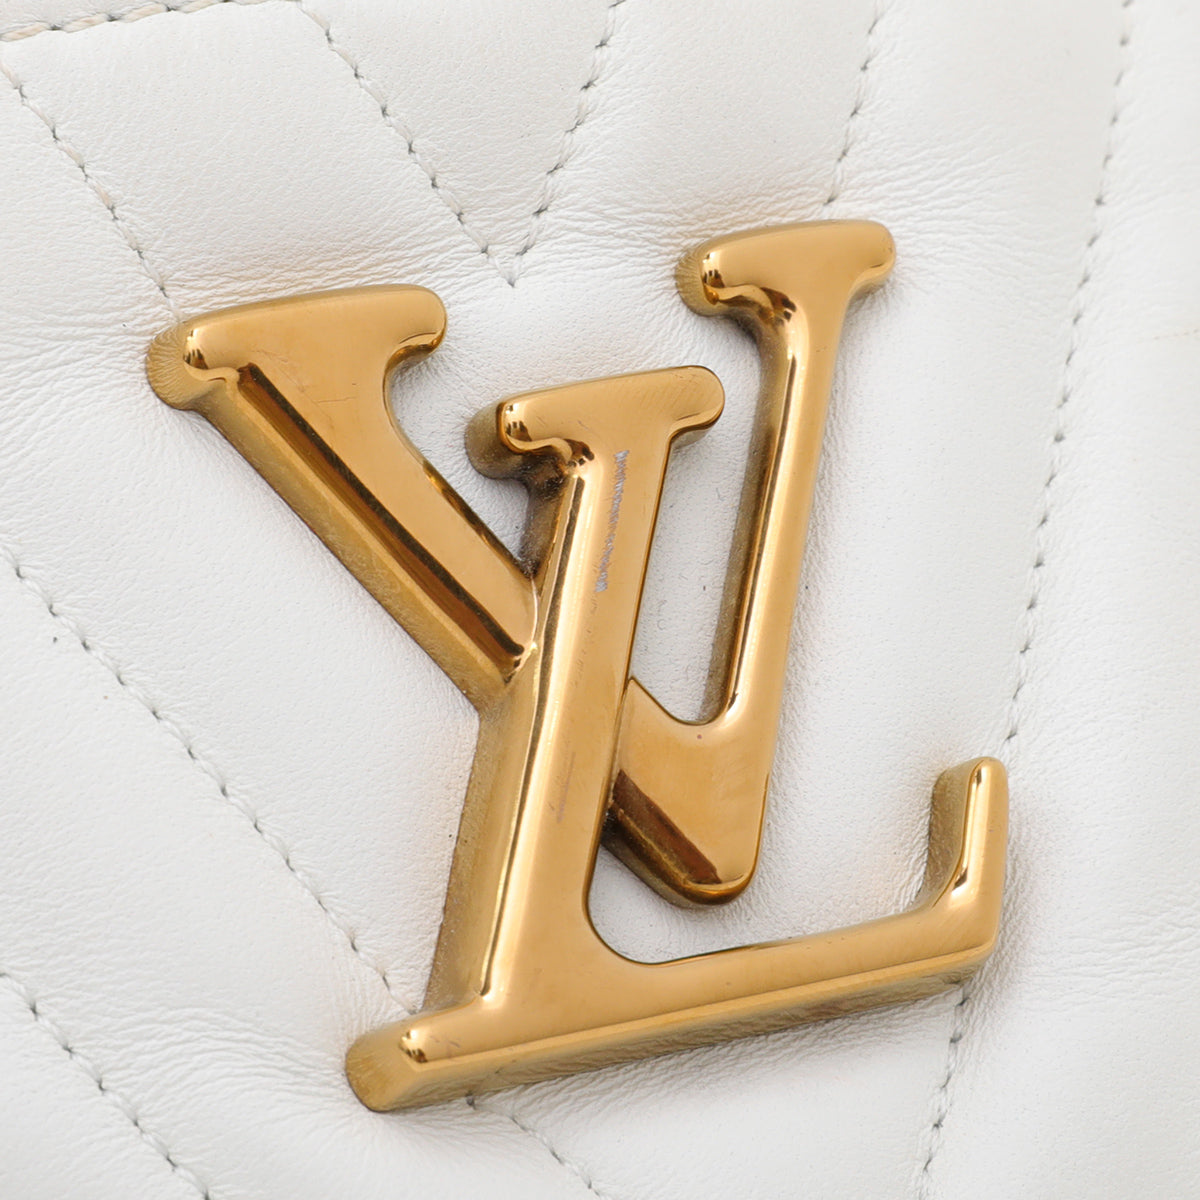 Louis Vuitton New Wave Bum Bag & Camera Bag